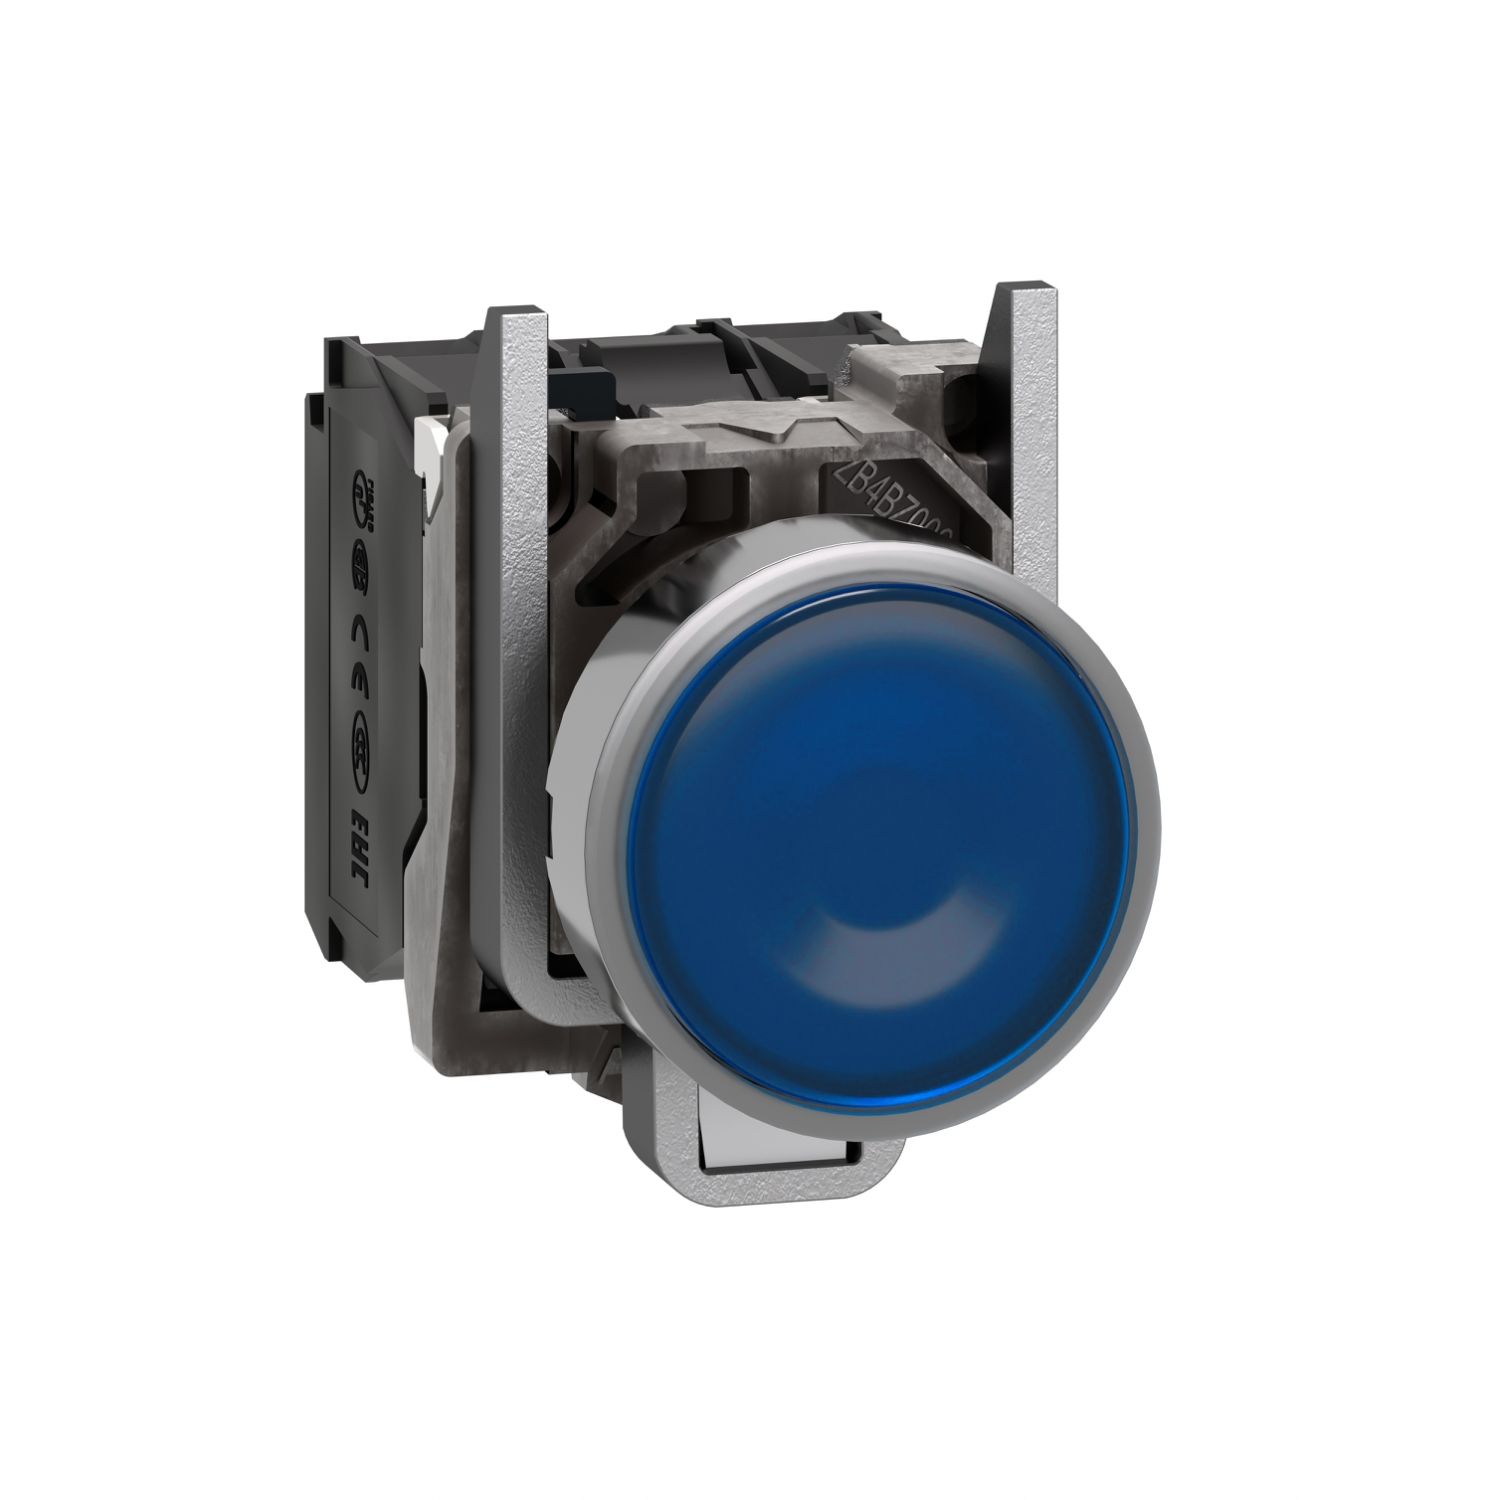 XB4BW36B5 Illuminated push button, Harmony XB4, metal, blue flush, 22mm, universal LED, plain lens, 1NO + 1NC, 24V AC DC